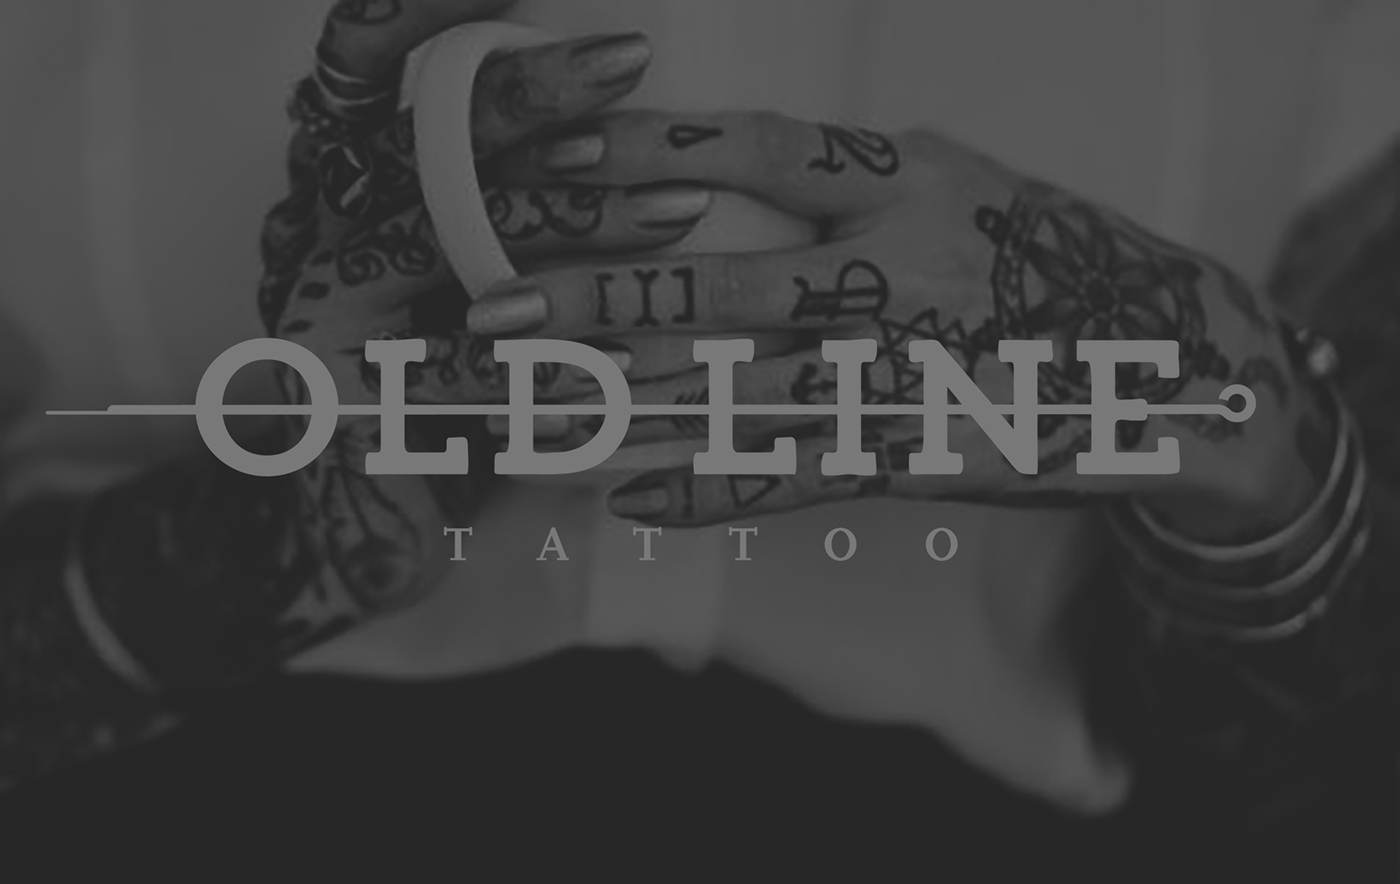 tattoo brand logo tattooing tatuaggio black dark TATTOOIST old school